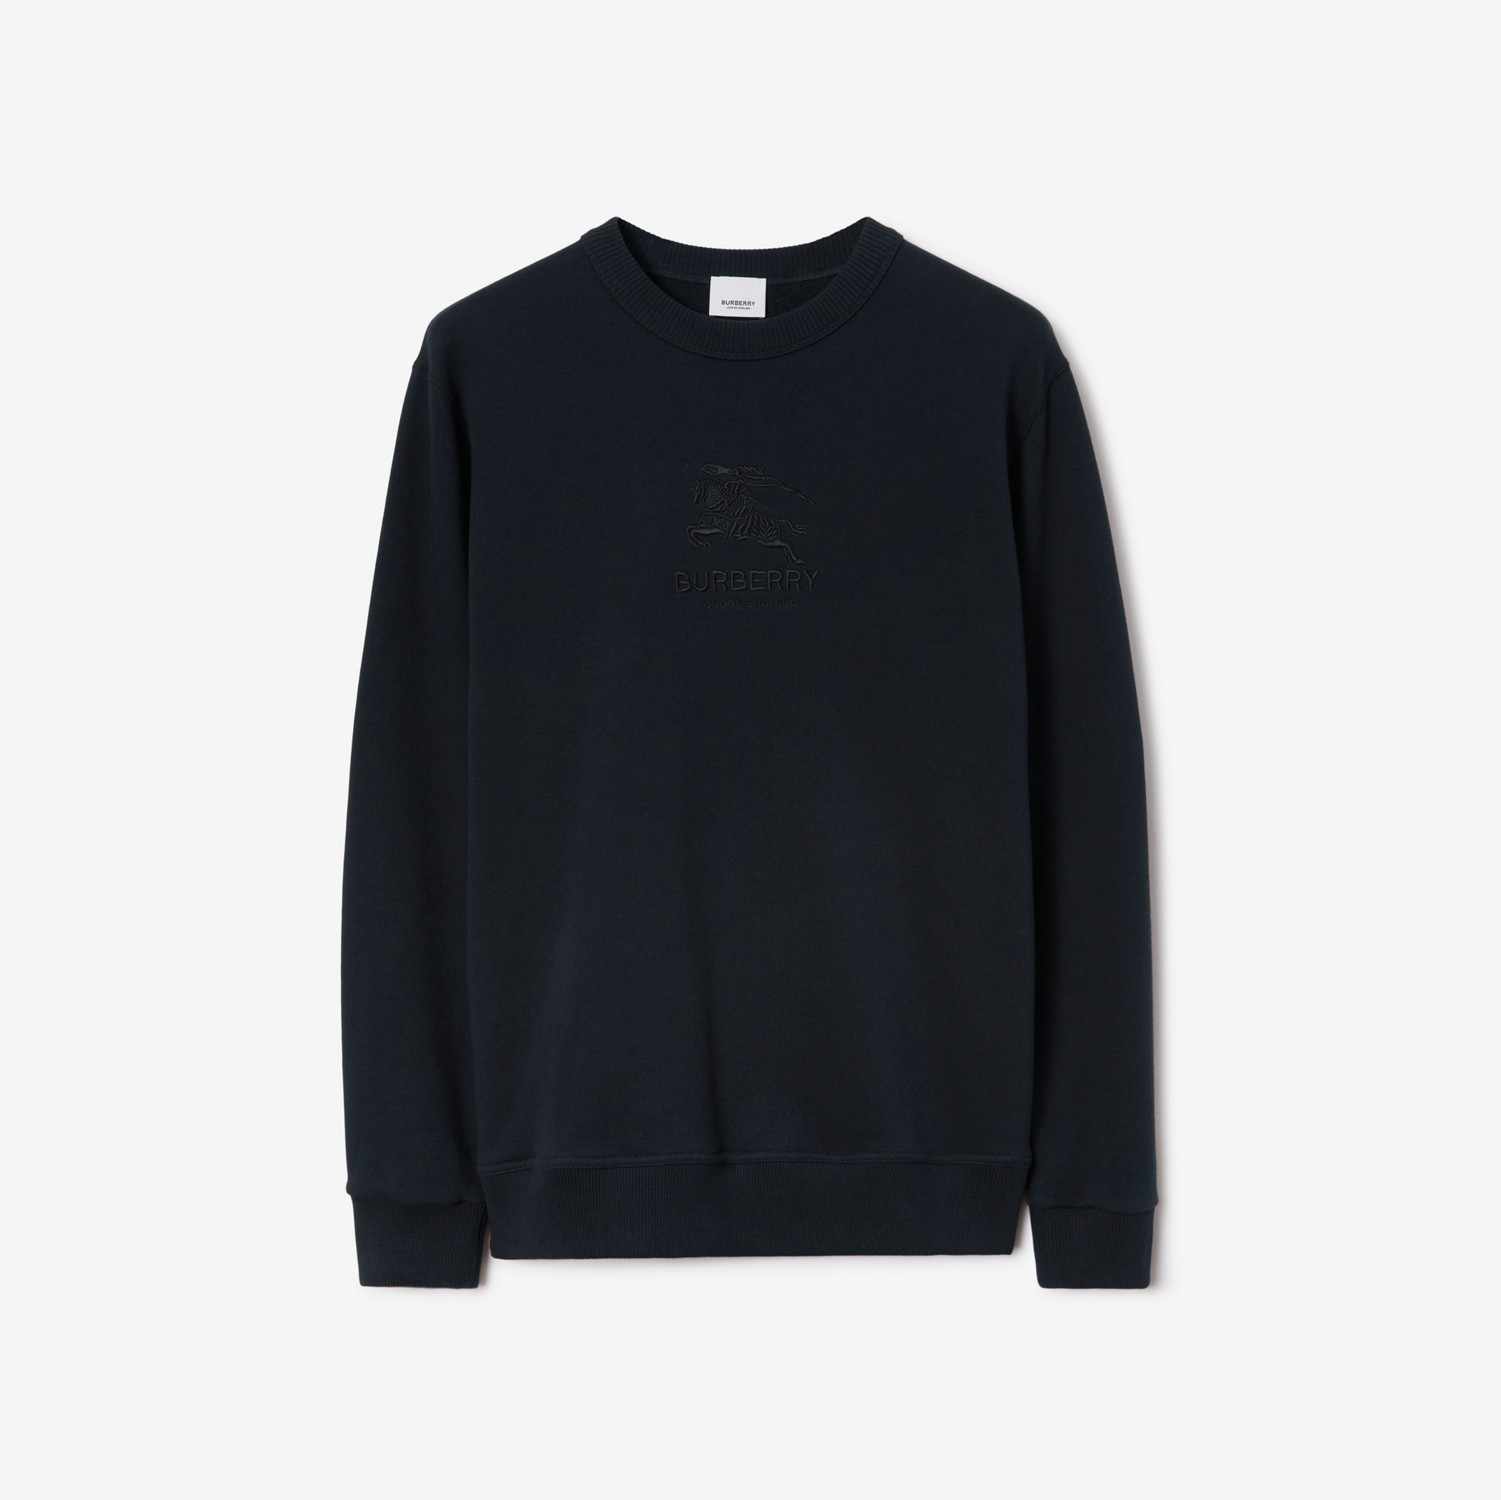 Baumwoll-Sweatshirt mit EKD-Motiv (Rauchiges Marineblau) - Herren | Burberry®